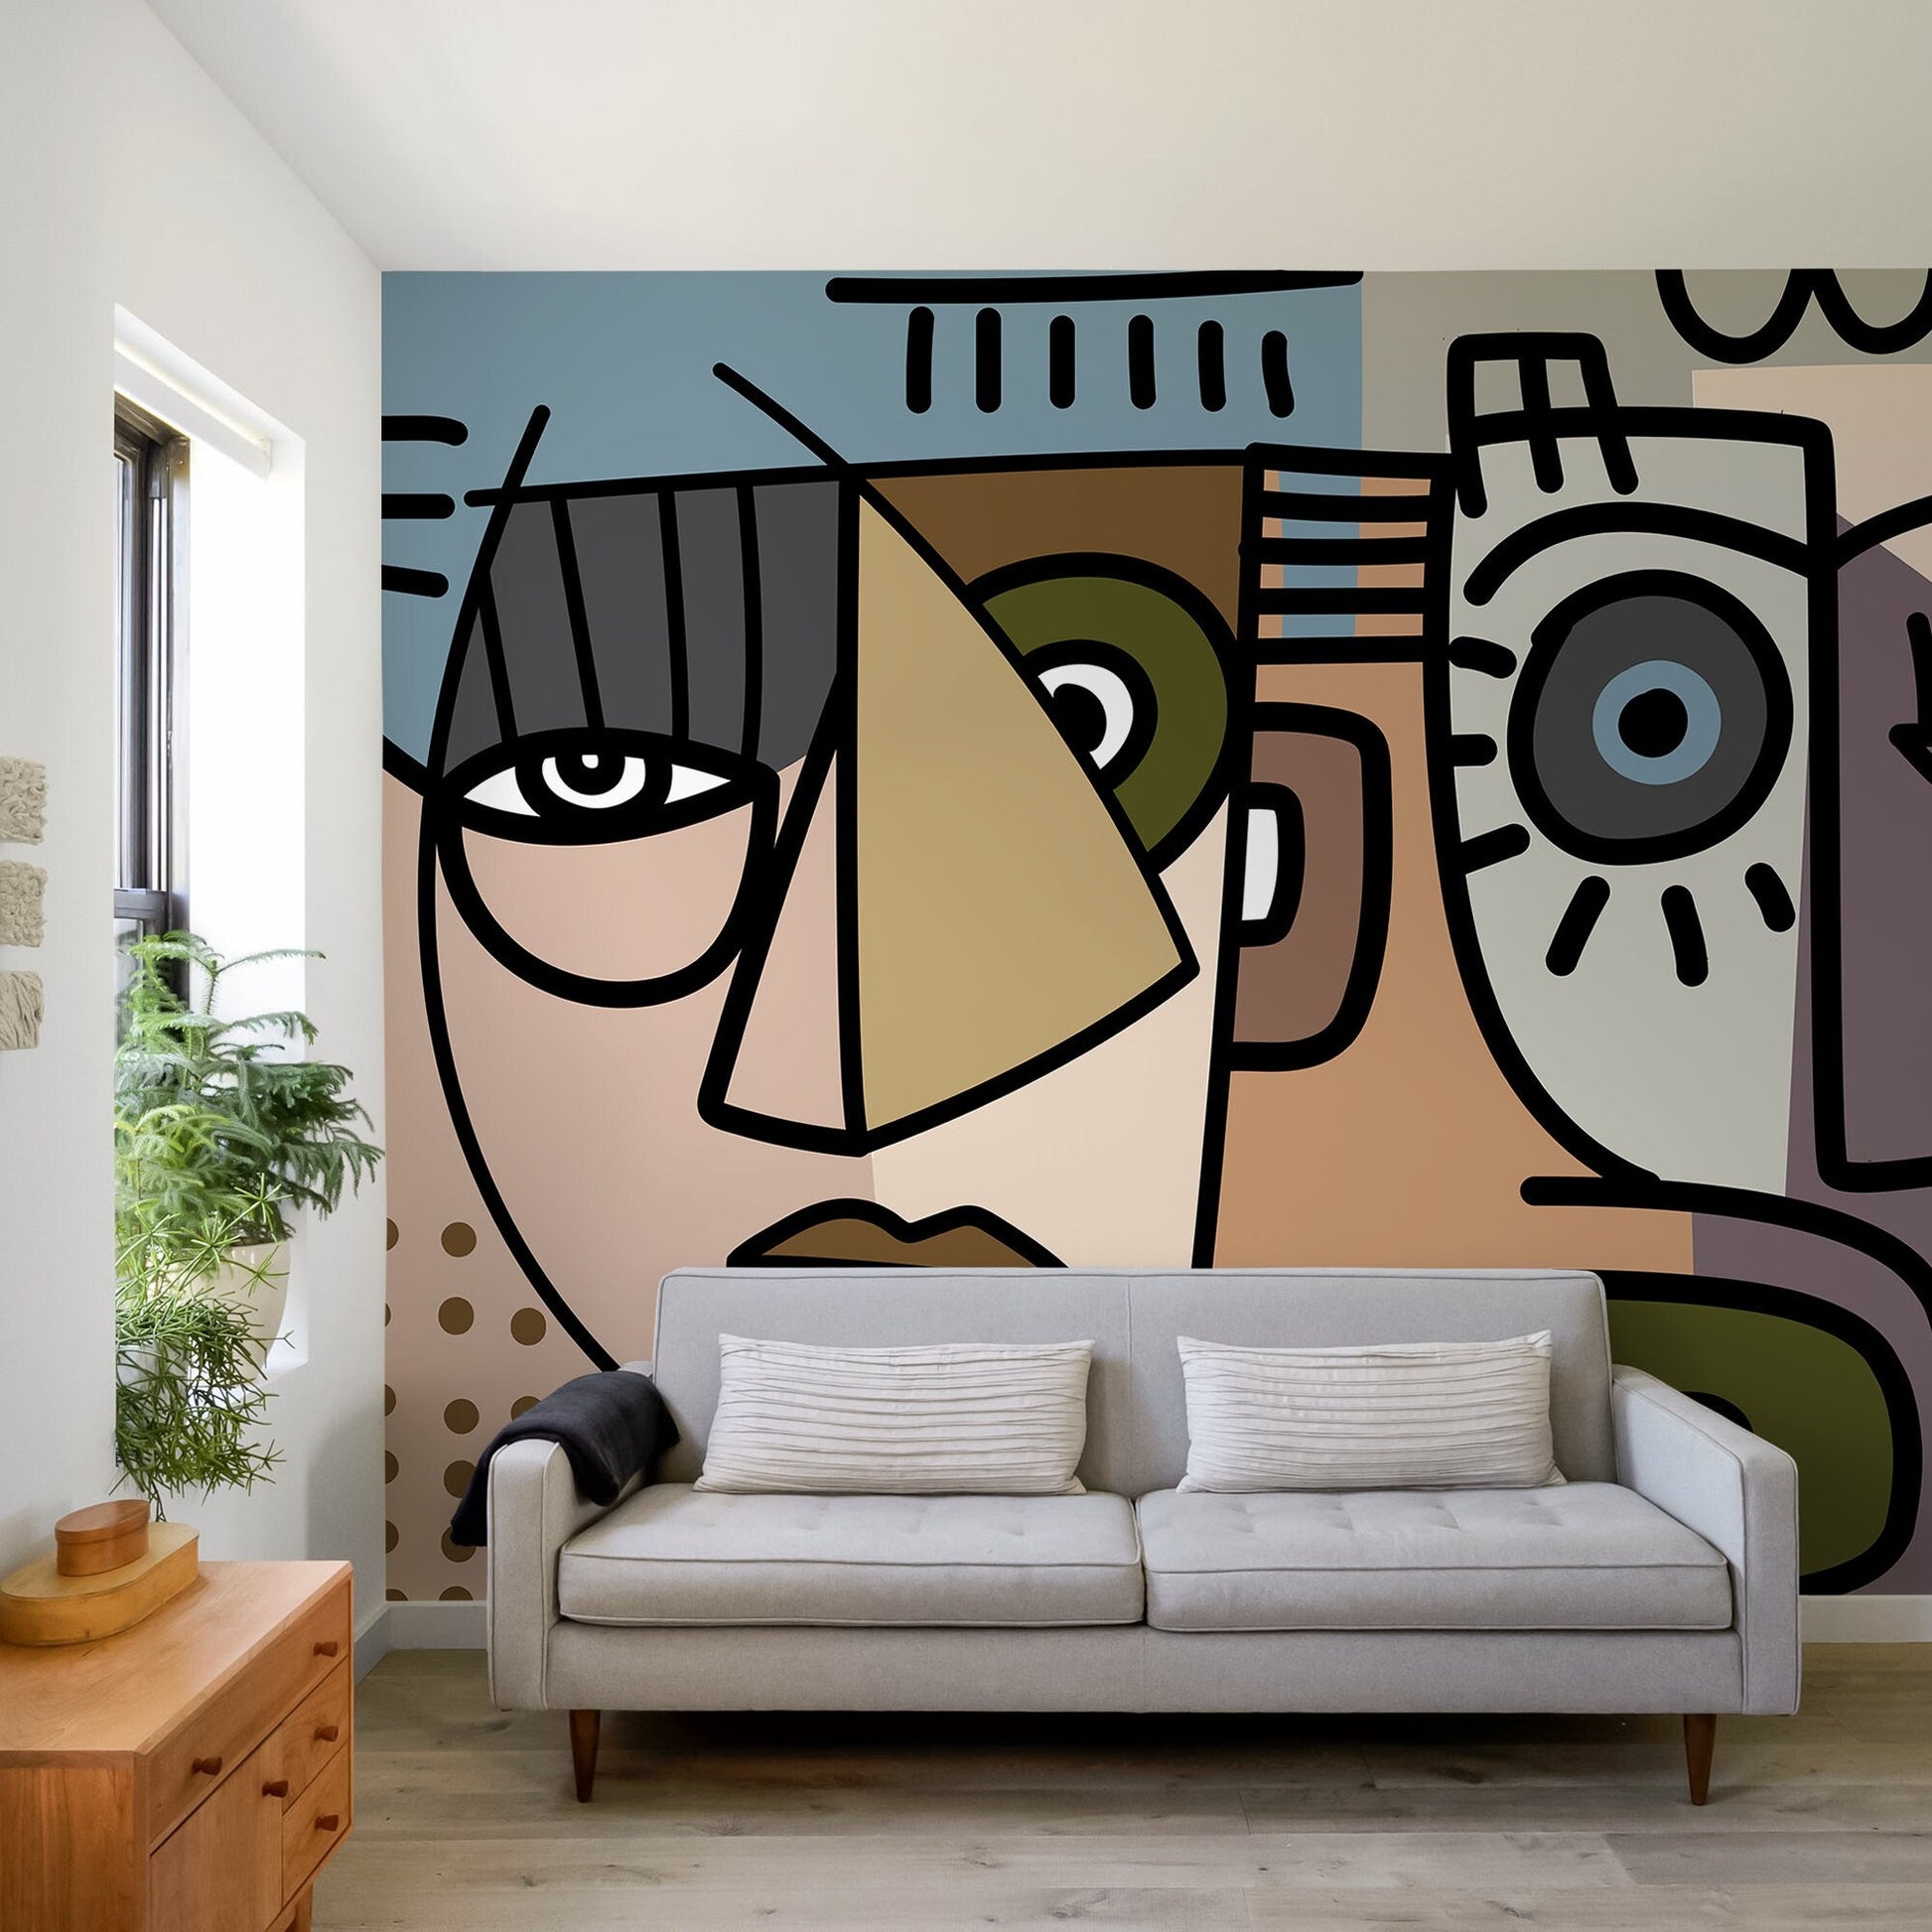 Cubism Art Wallpaper Abstract Modern Mural Peel and Stick Wallpaper Home Decor - D567